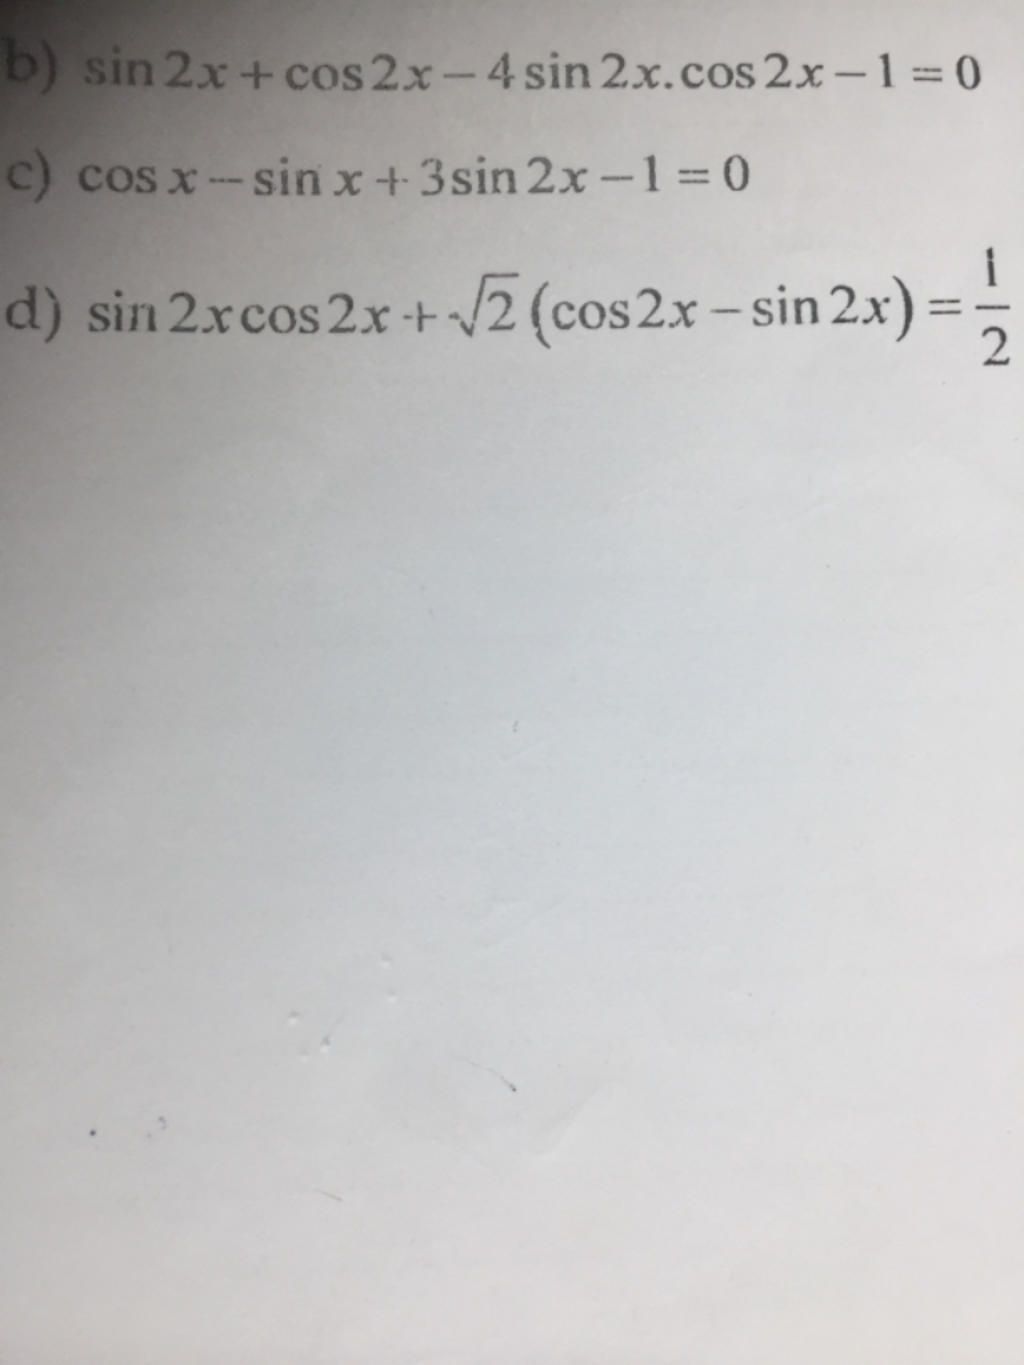 Công thức nào được sử dụng để chuyển đổi 4sin2x.cos2x thành một biểu thức khác?
